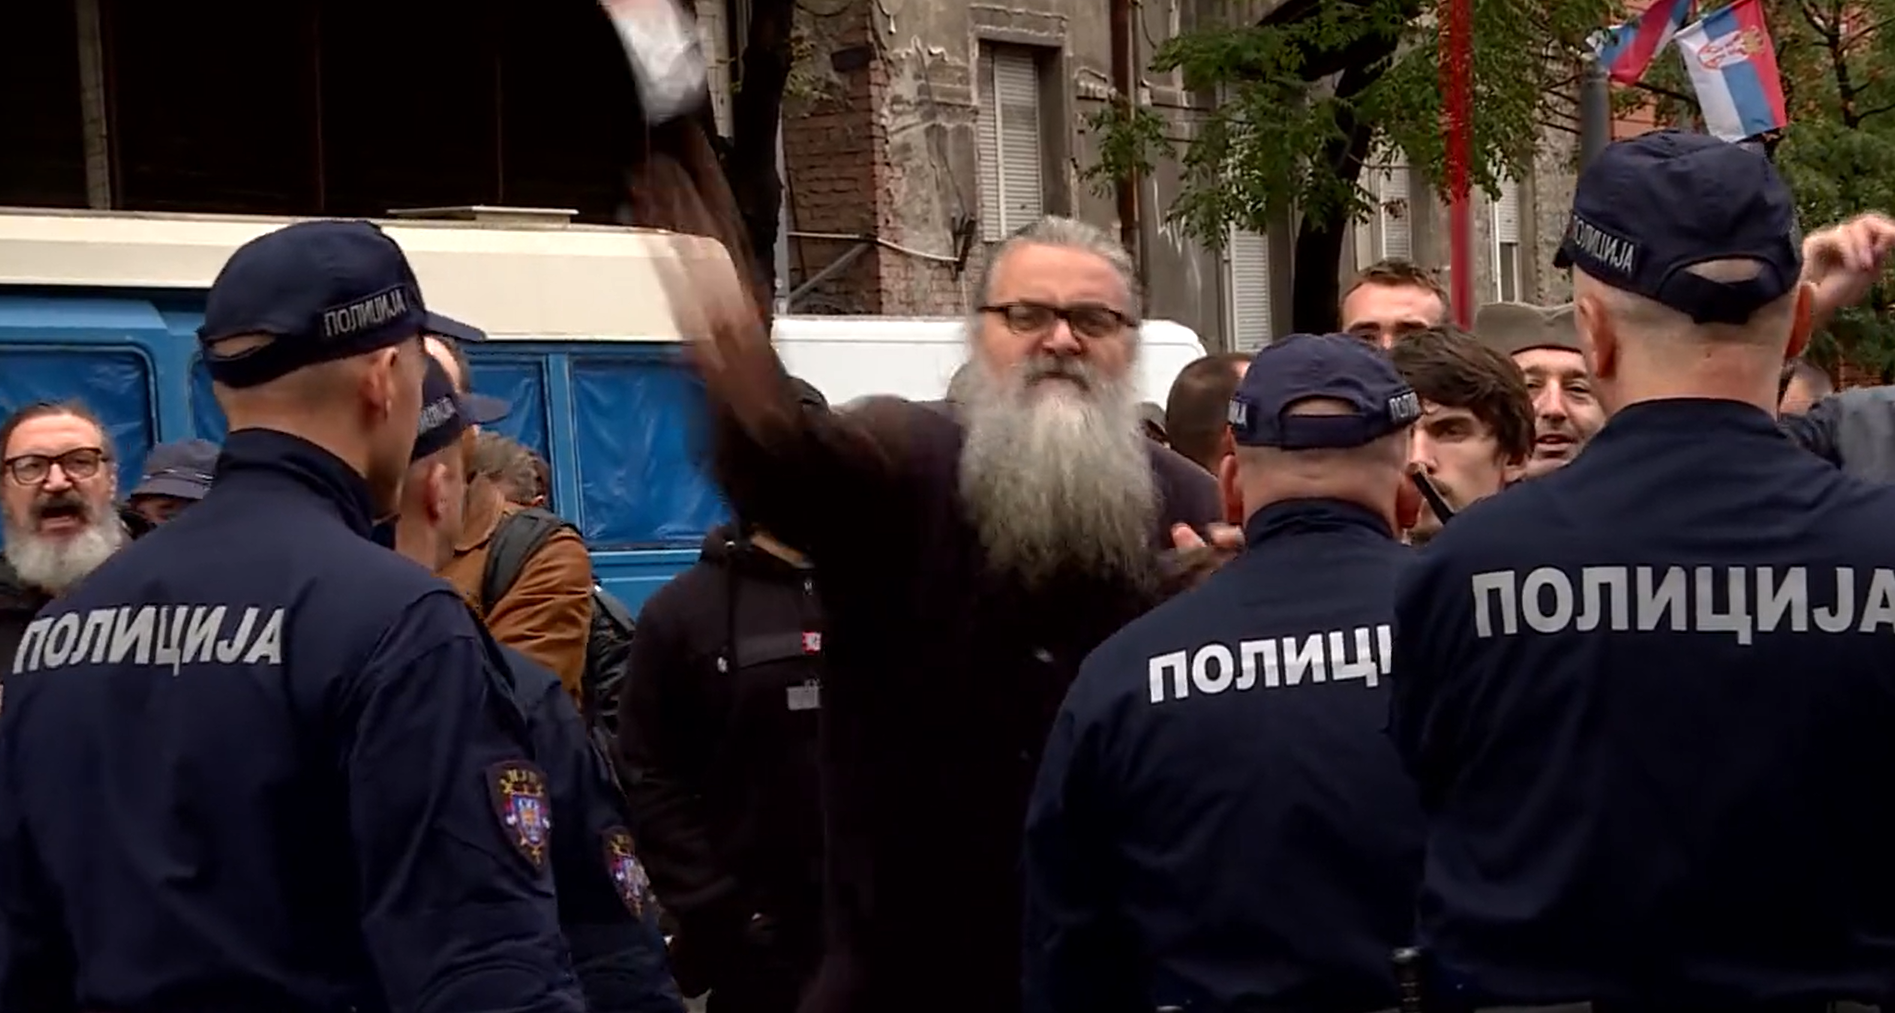 VIDEO Pogledajte kako je bivši monah napao snimatelja na Europrideu, pogodio ga bocom